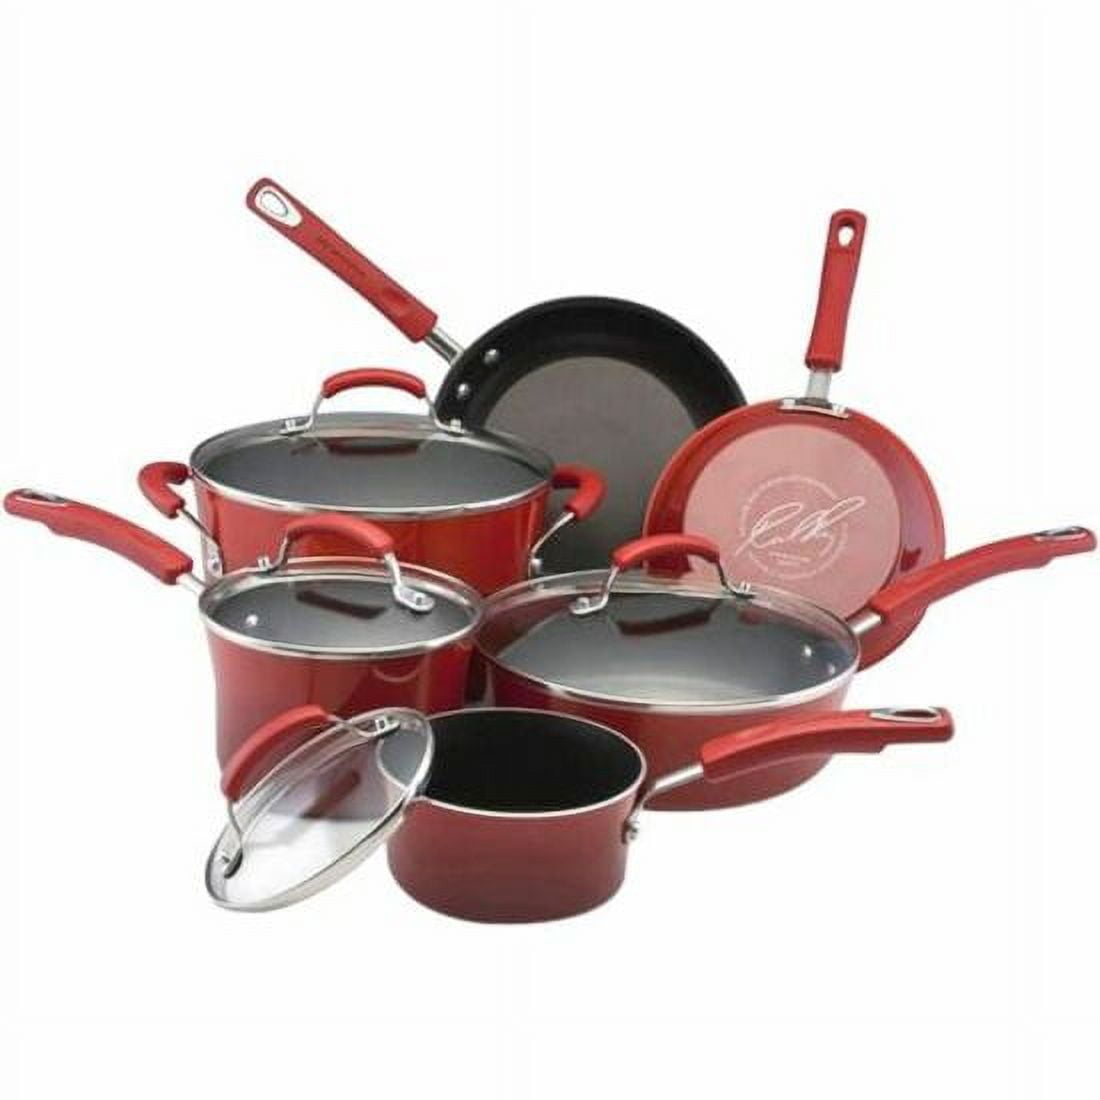 Посуда для кухни. Набор кастрюль. Комплект кастрюль. Кухонная посуда красного цвета. Купить красную посуду